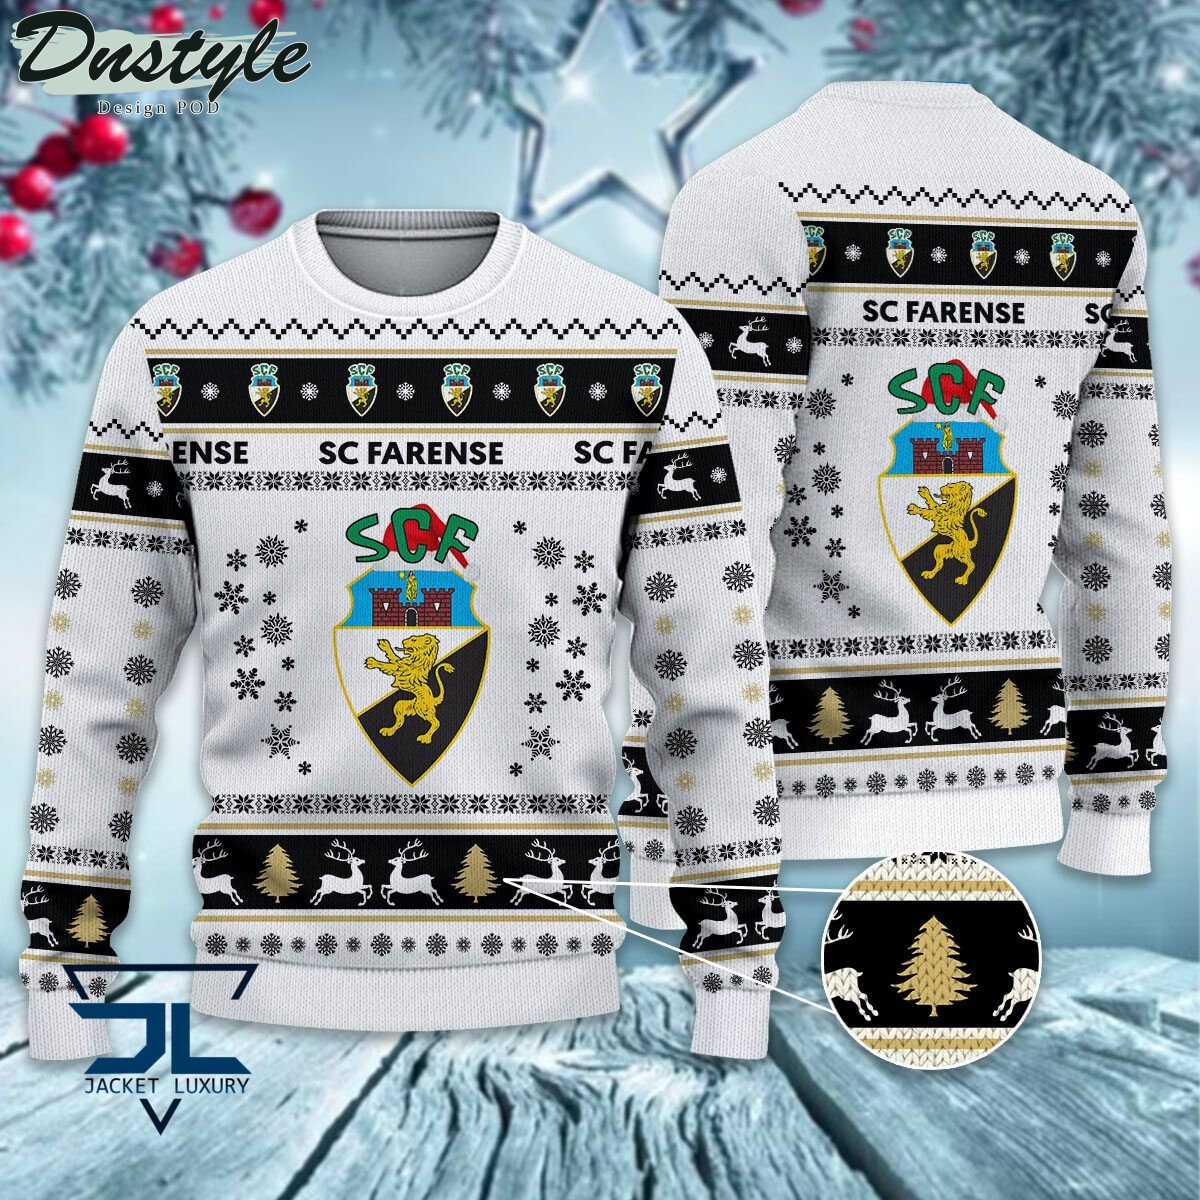 CS Marítimo ugly christmas sweater